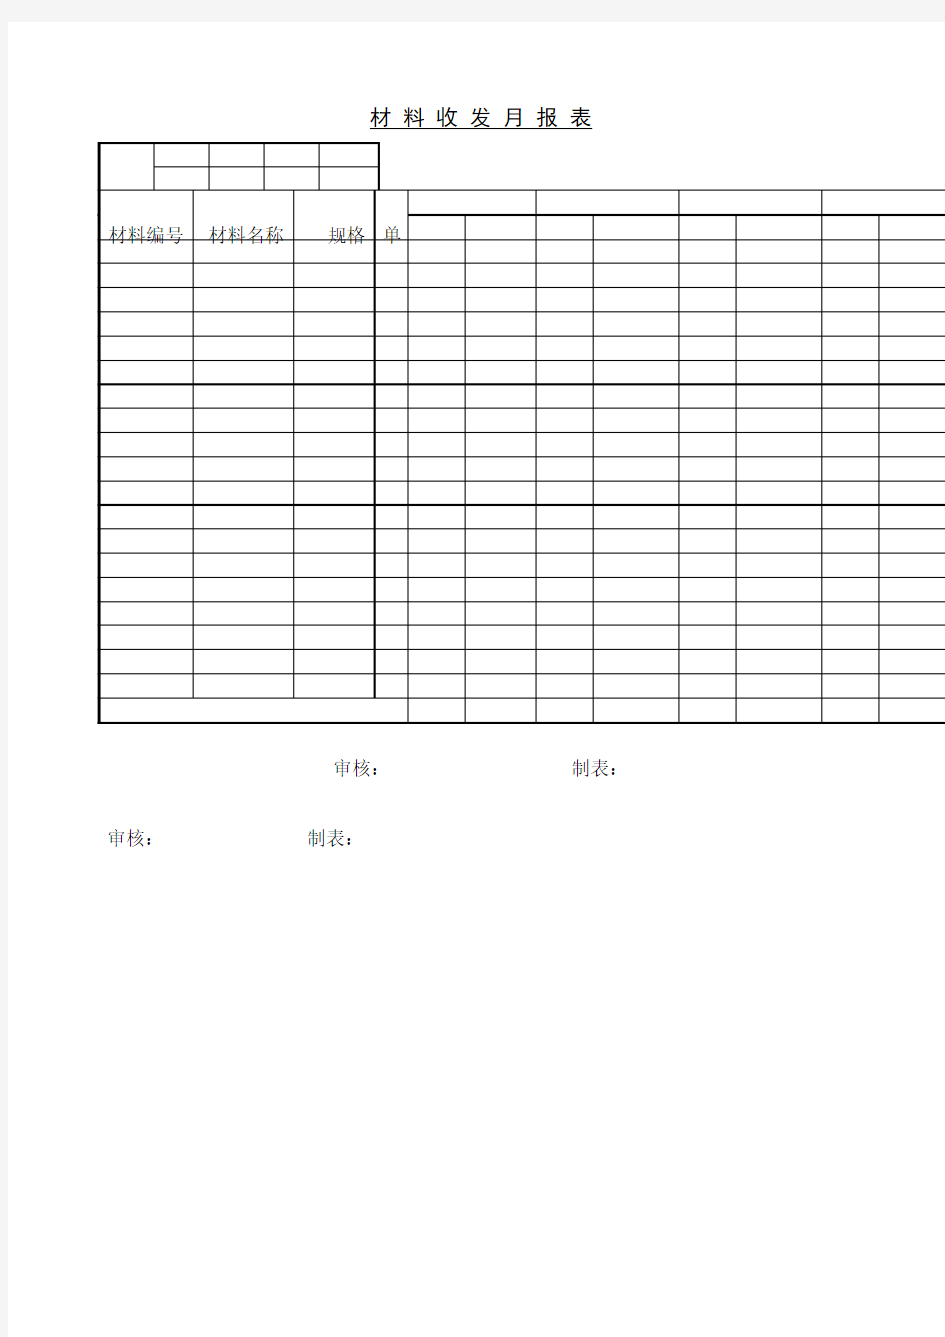 材料收发月报表表格模板、doc格式